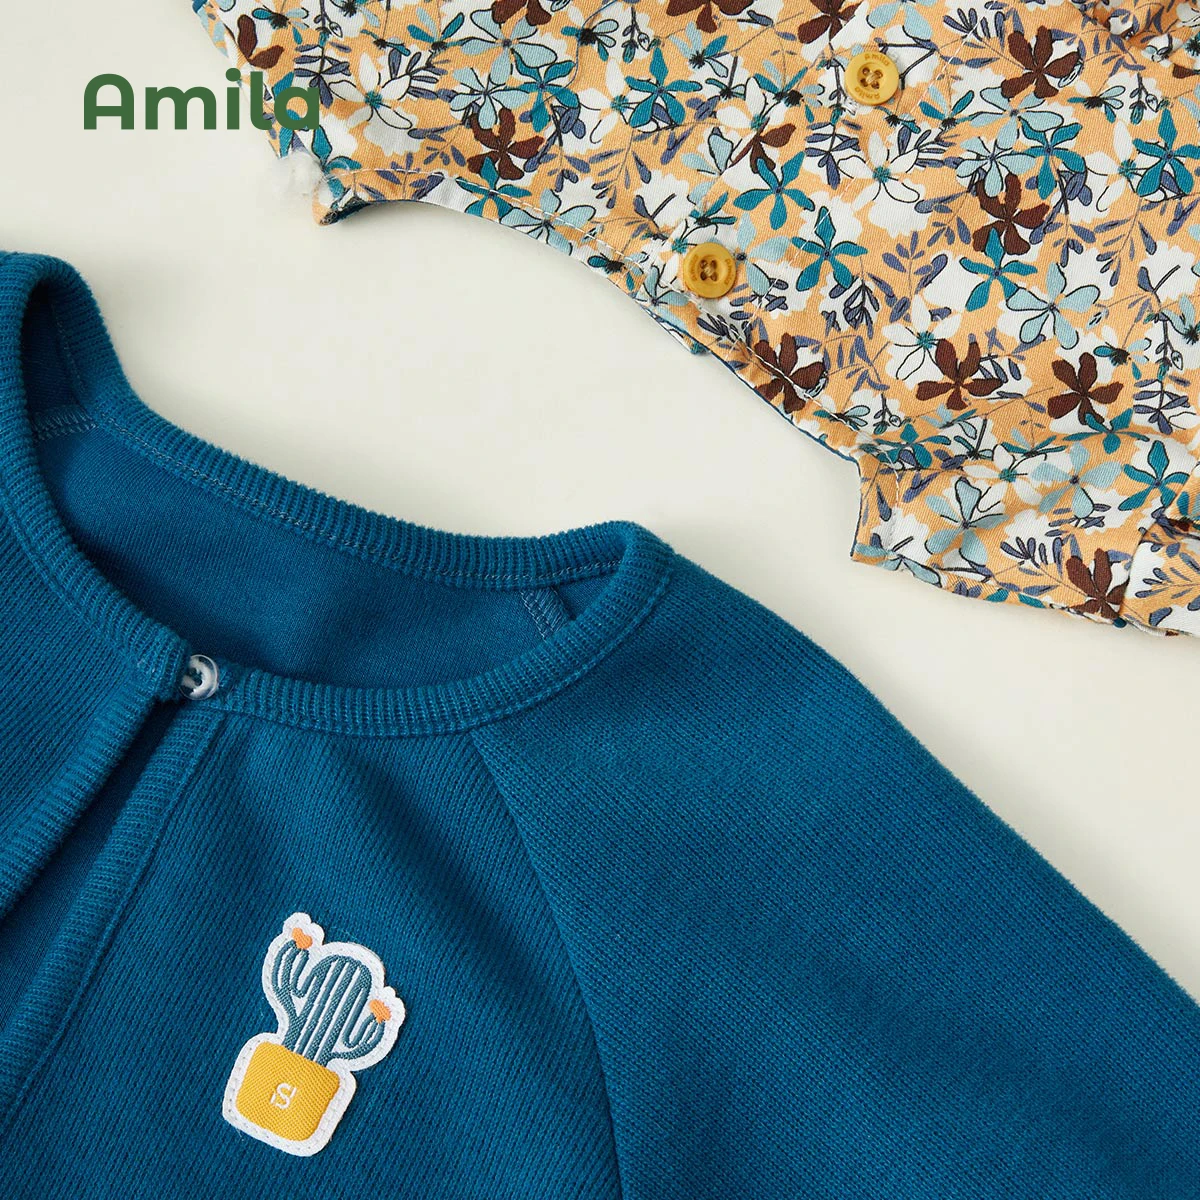 Amila Bebek Elbise Setleri 2022 Sonbahar Yeni Düz Renk Ceket Çiçek A-Line Etek Takım Elbise Kızlar için Uzun Kollu Çocuk Giysileri Moda 5